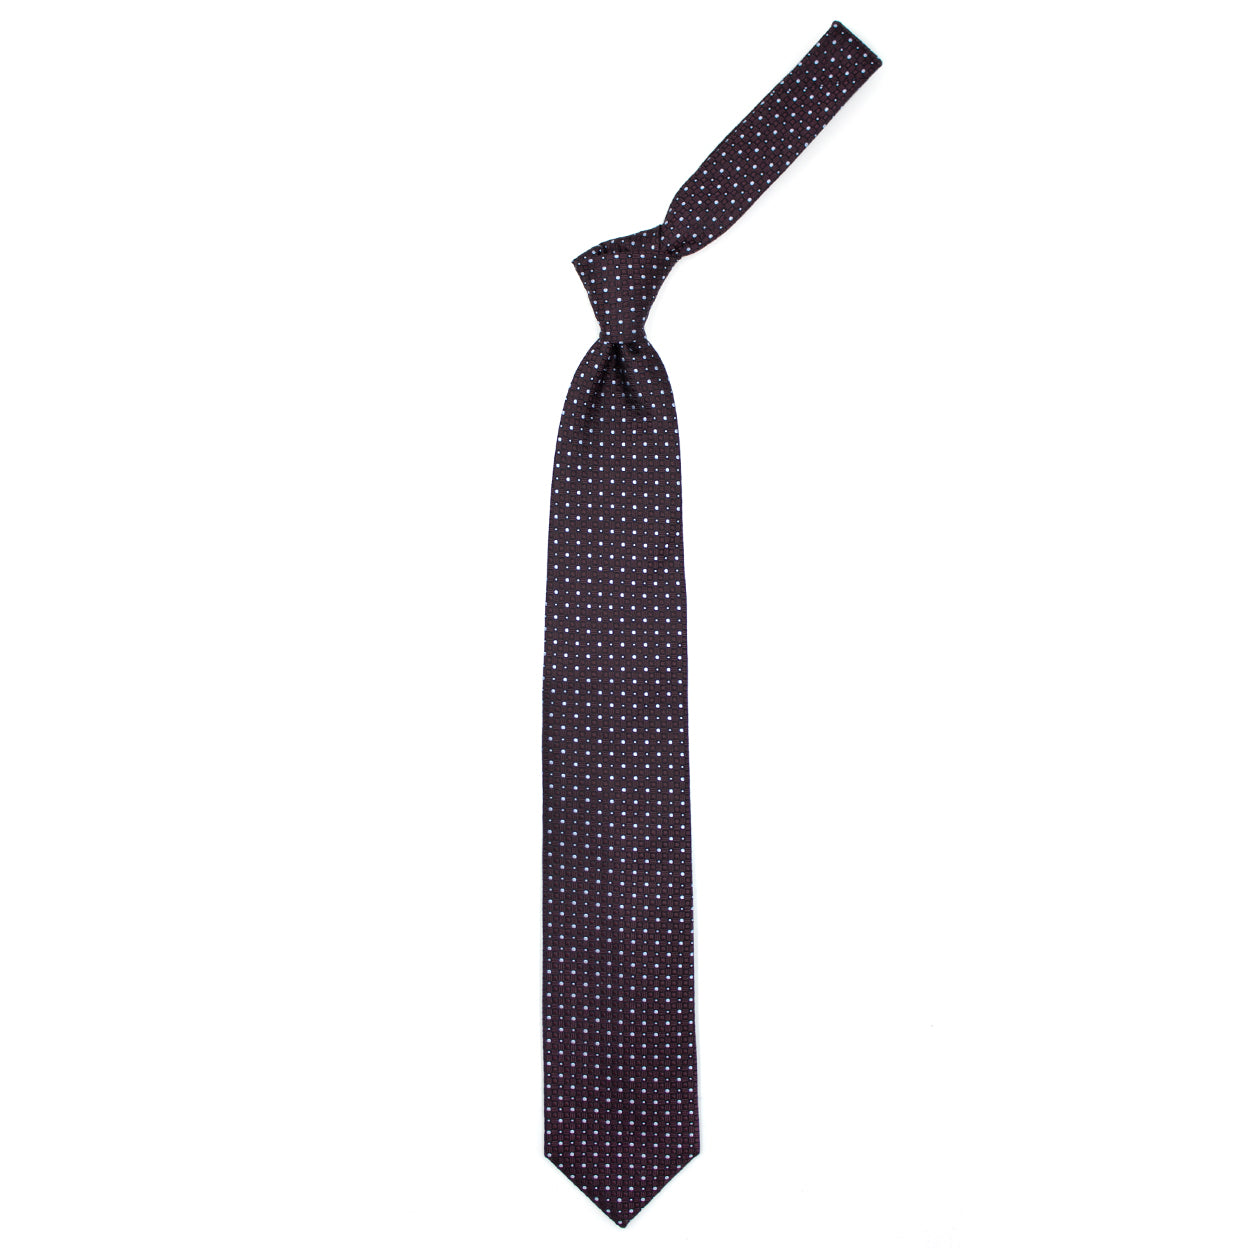 Cravatta marrone con pallini azzurri e pattern geometrico tono su tono